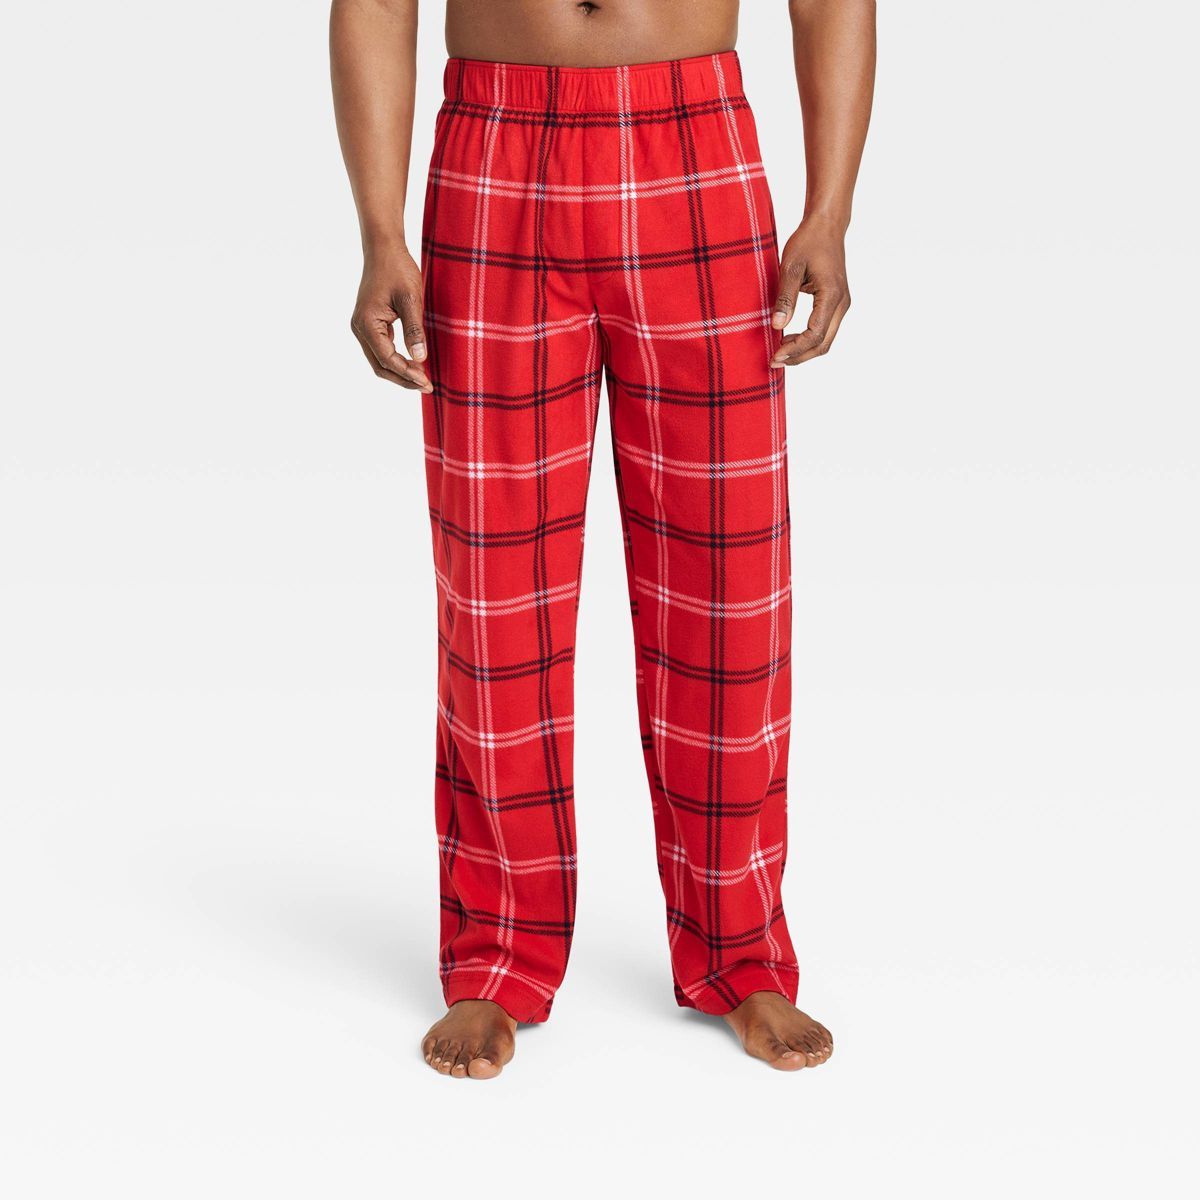 Men's Plaid Fleece Matching Family Pajama Pants - Wondershop™ Red M | Target